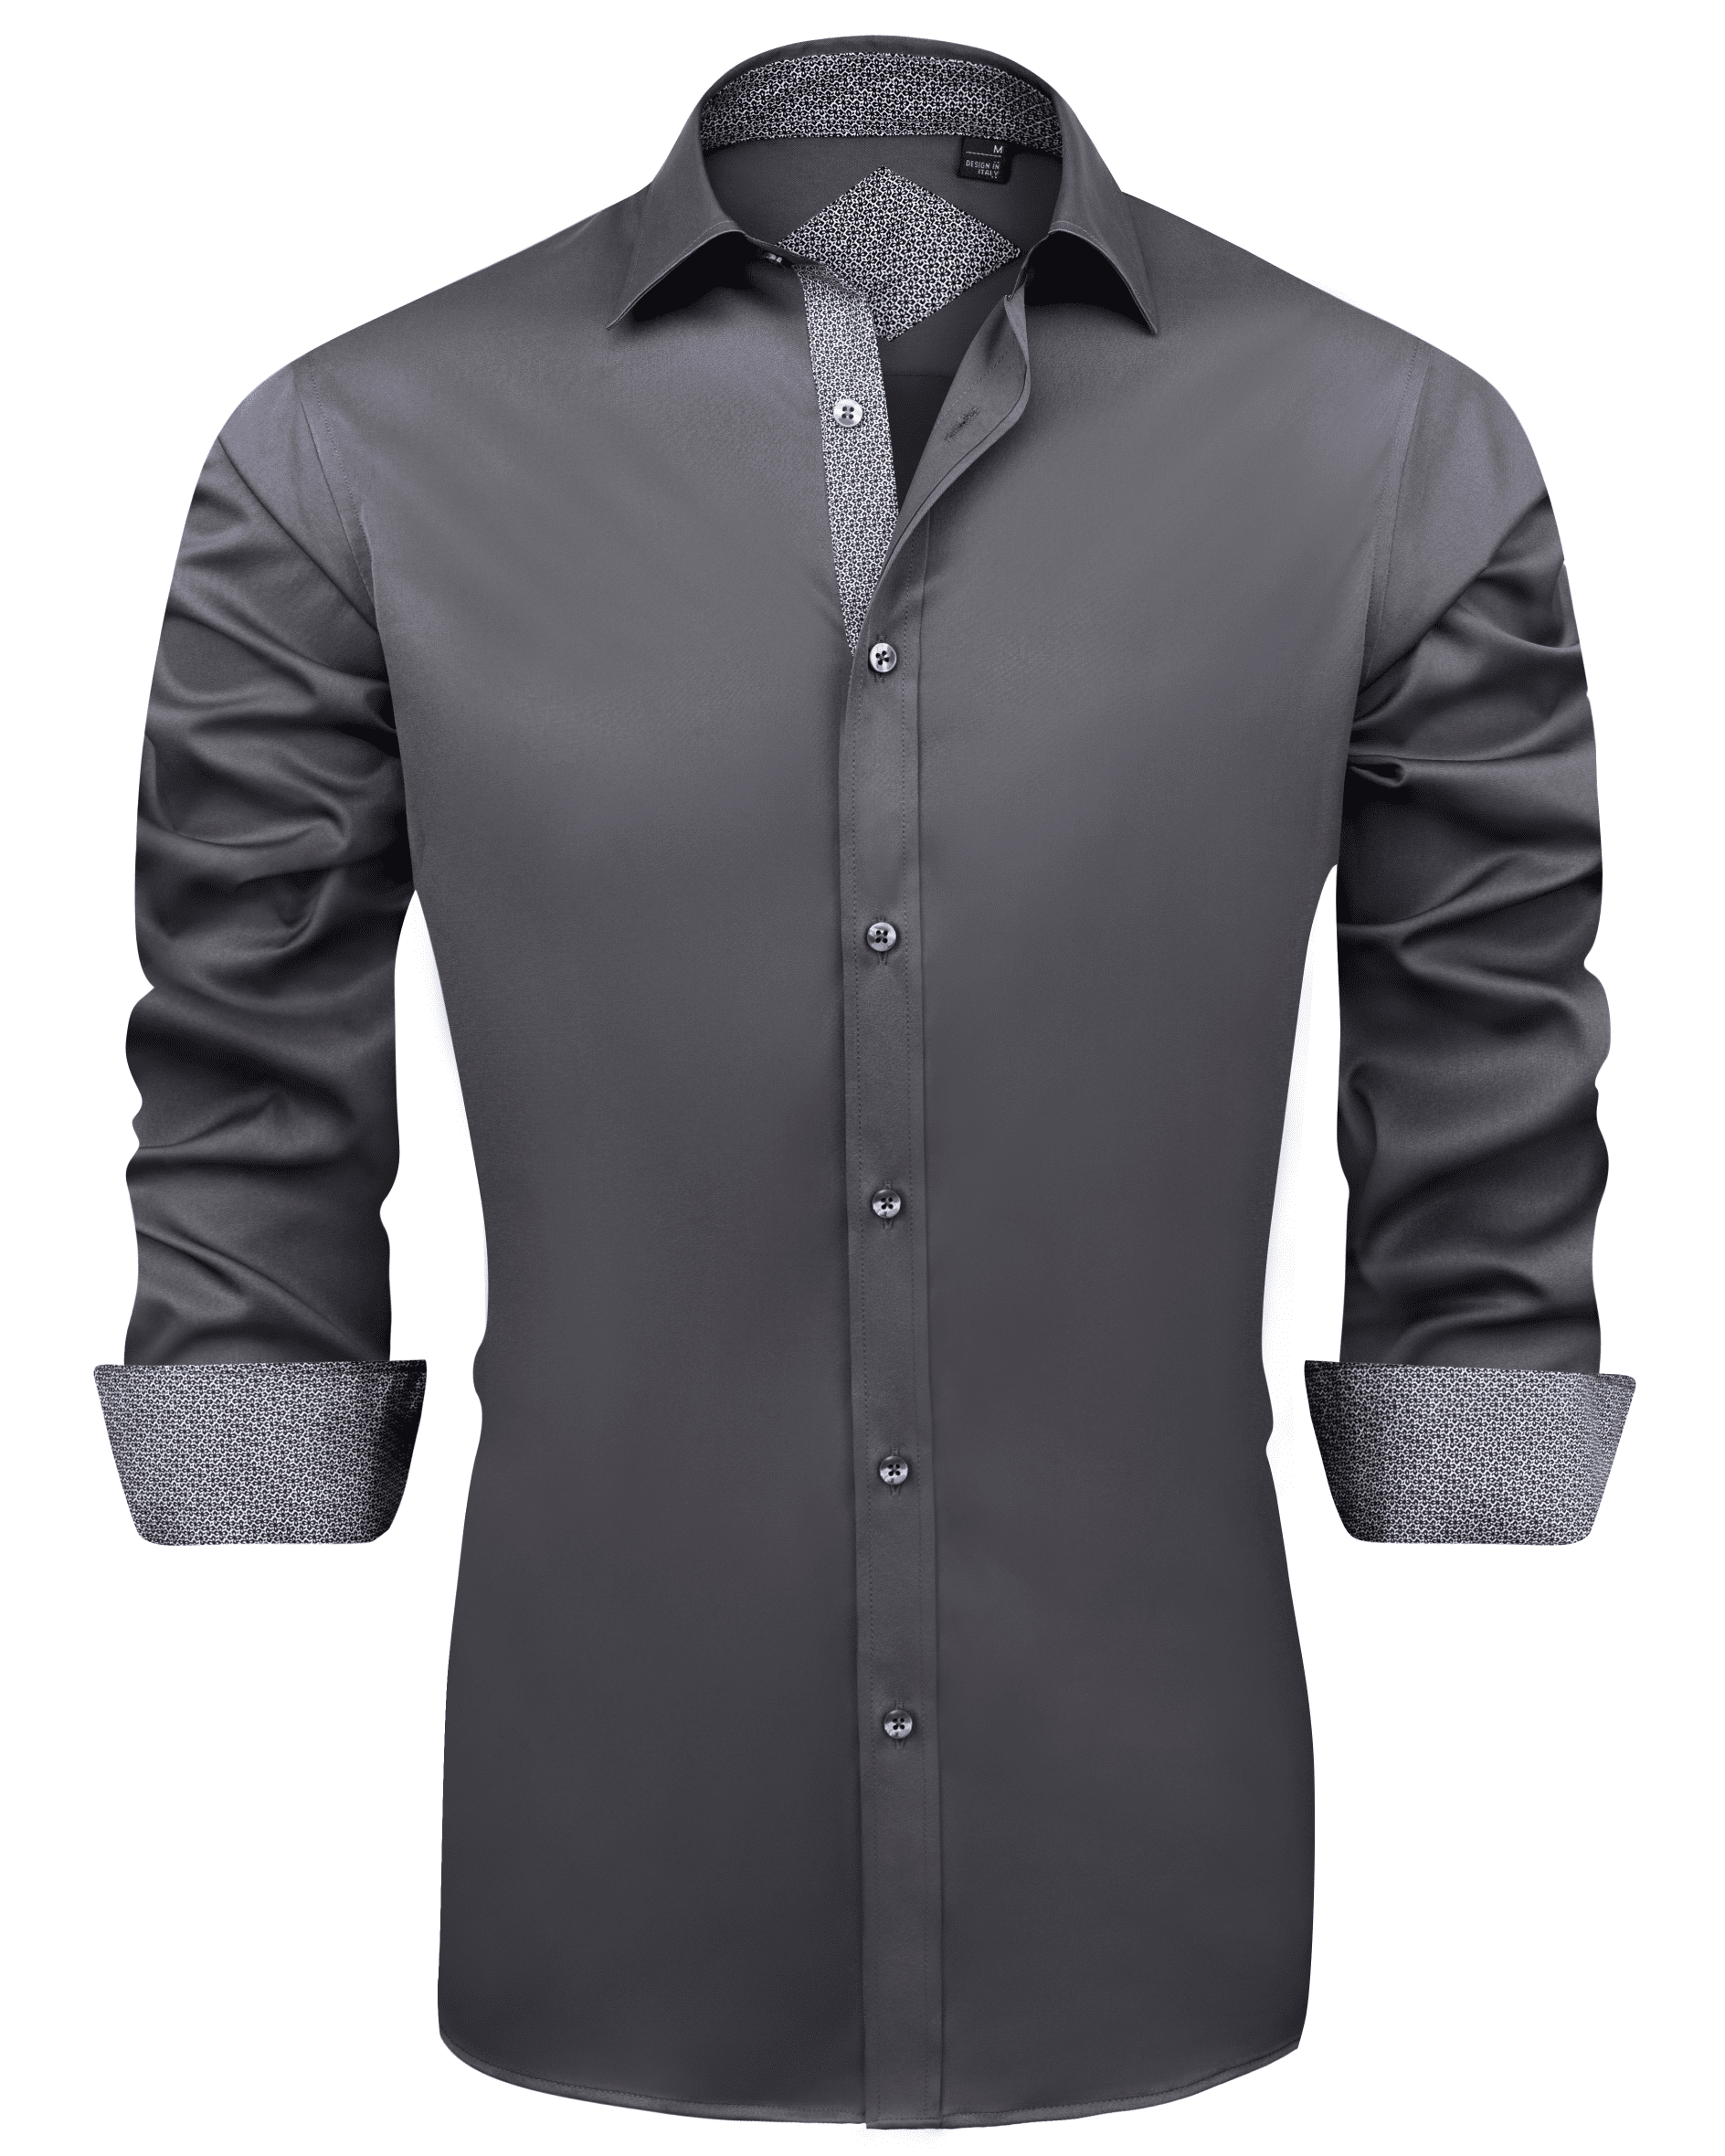 Evening Regular Long-Sleeved Shirt - Men - Ready-to-Wear